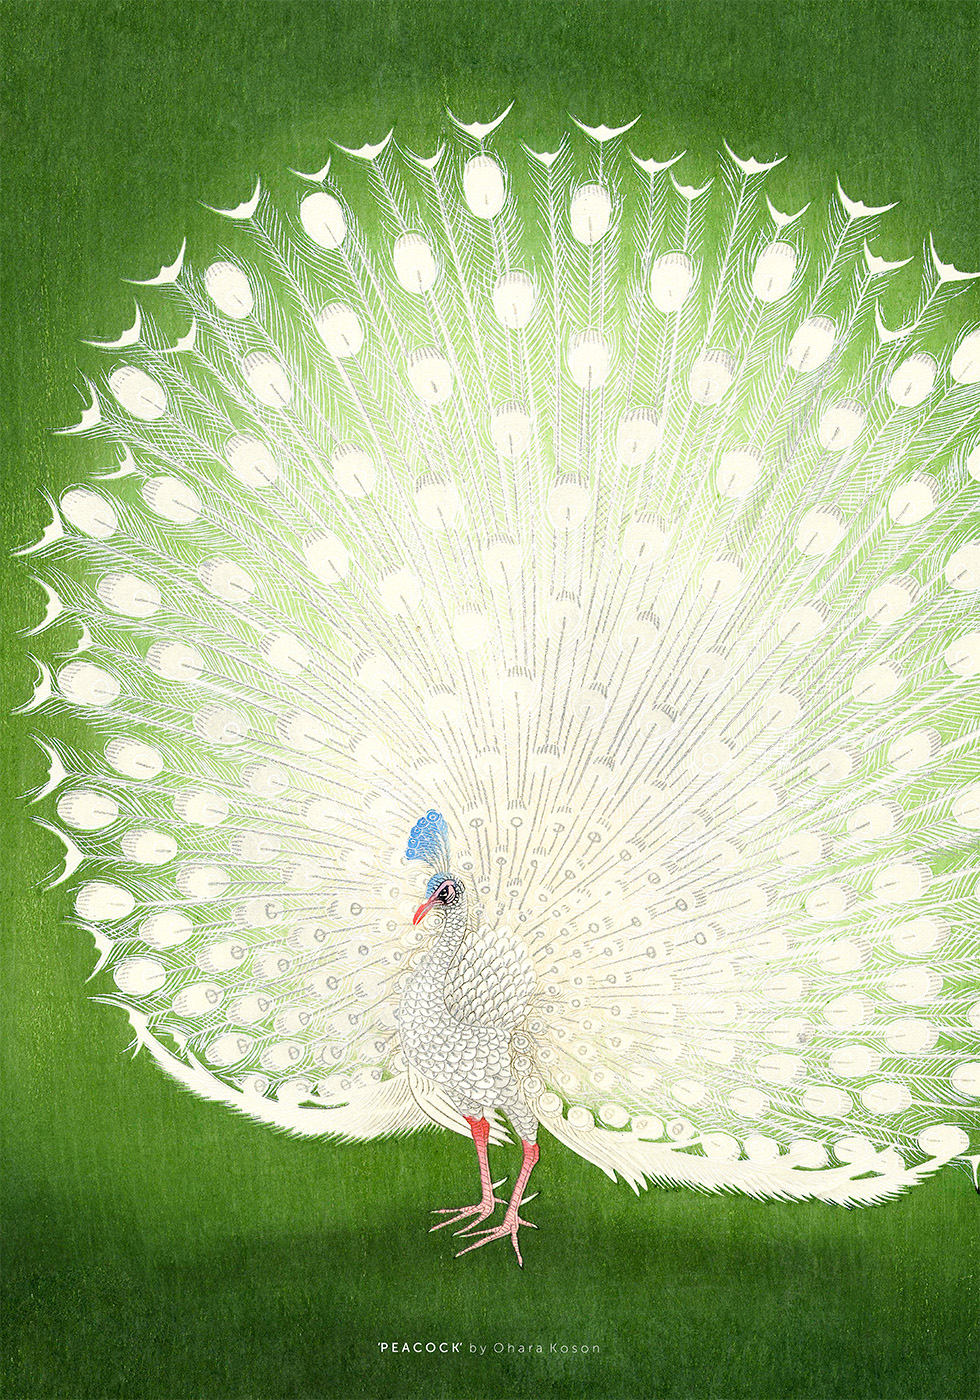 Billede af Peacock af Plakatwerket